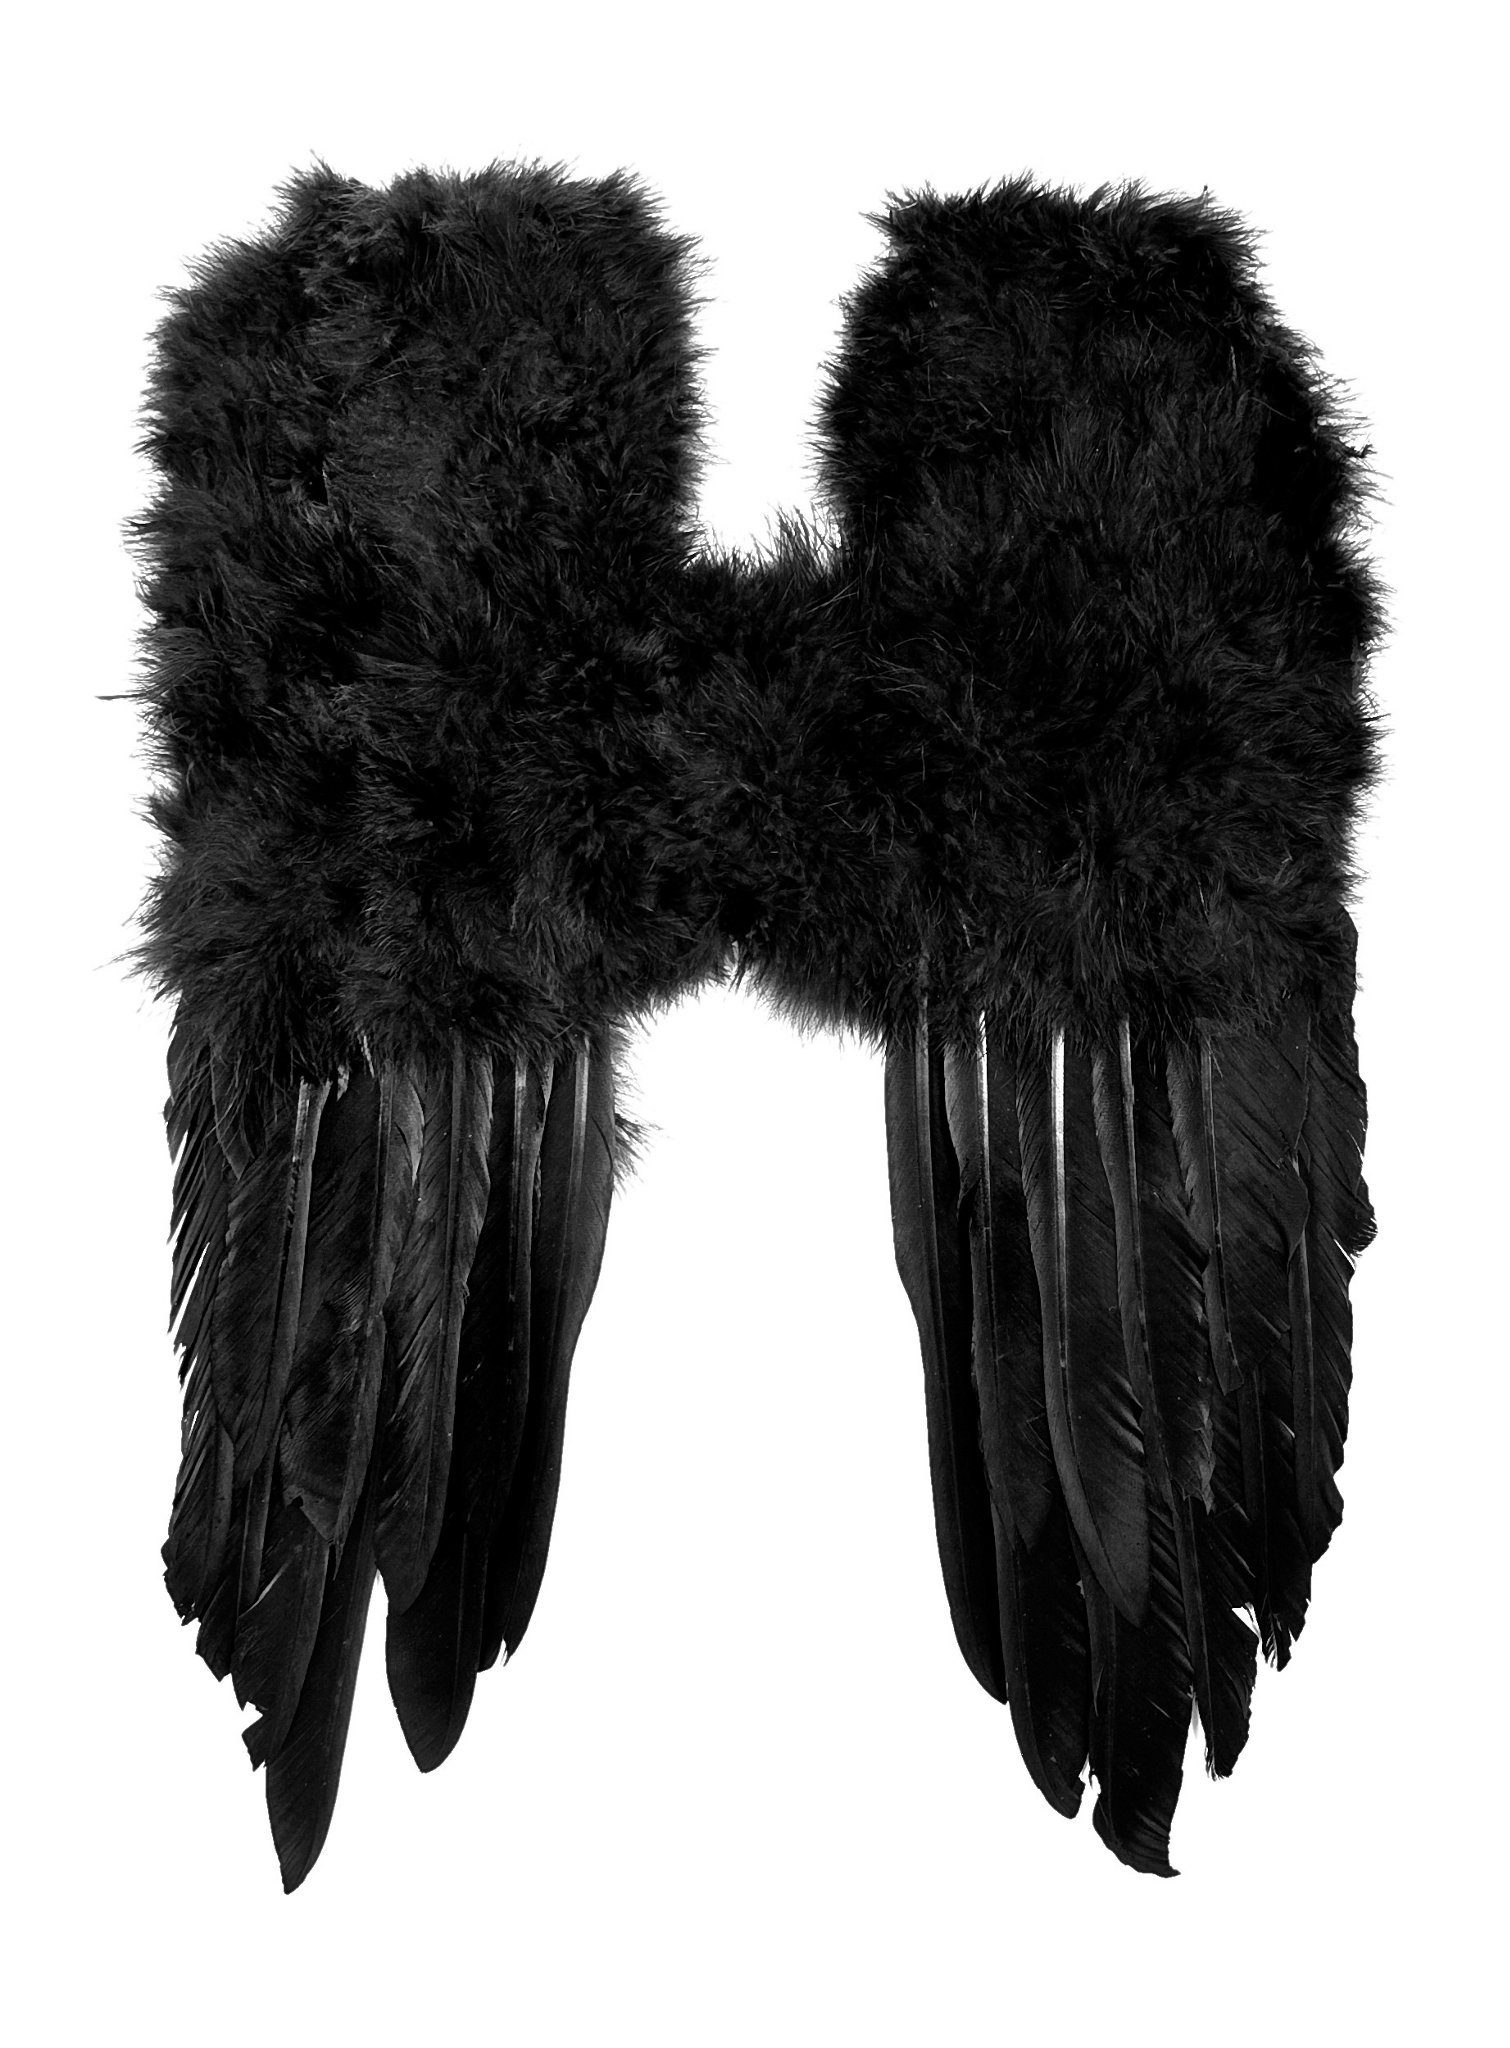 Metamorph Kostüm-Flügel Kleine Feder Flügel schwarz für Fasching und Hallo, Imposante Federflügel für Elfen und Engel Kostüme